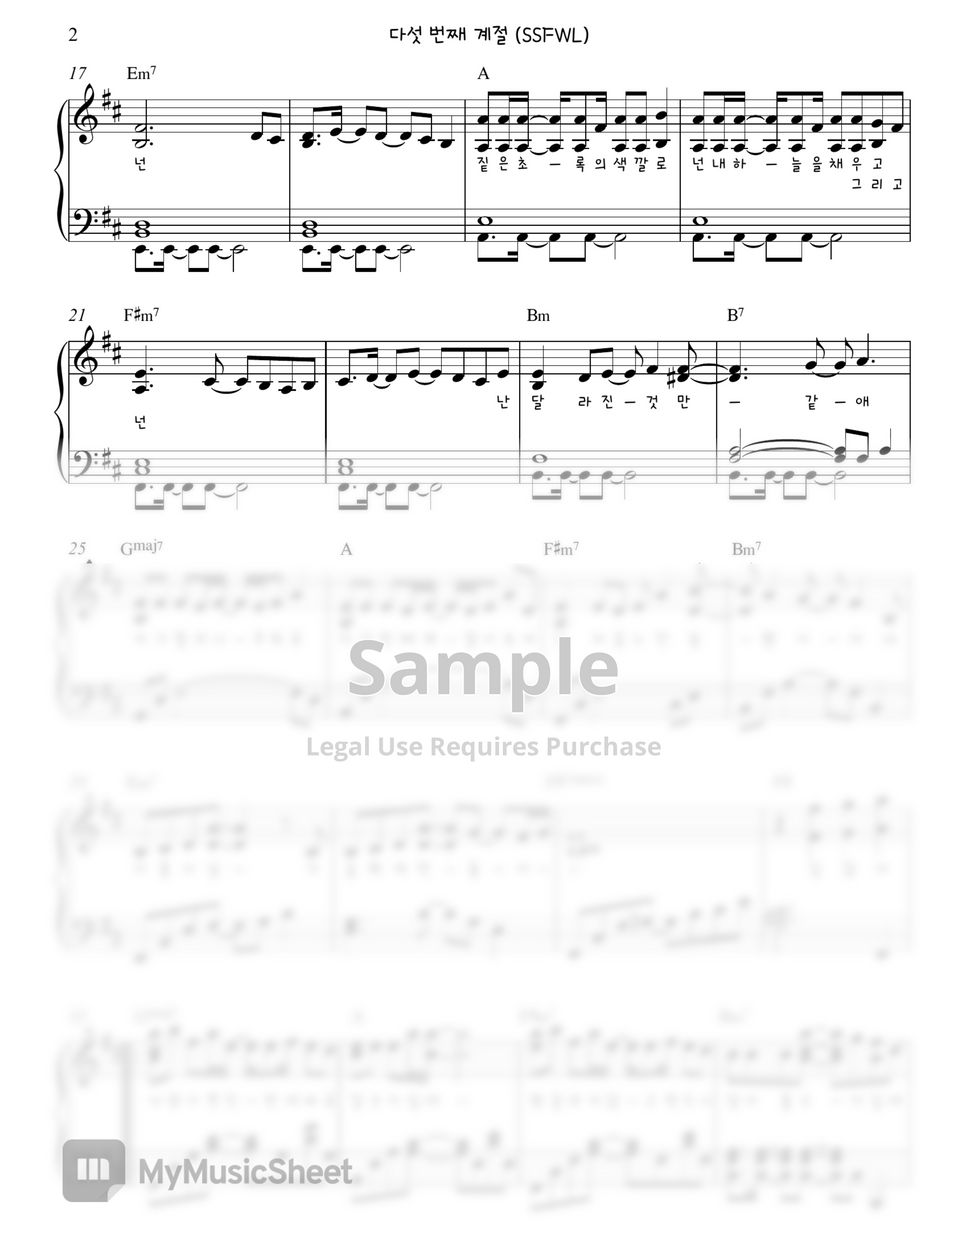 오마이걸 (Oh My Girl) - 다섯 번째 계절 (SSFWL) Piano Sheet by. Gloria L.